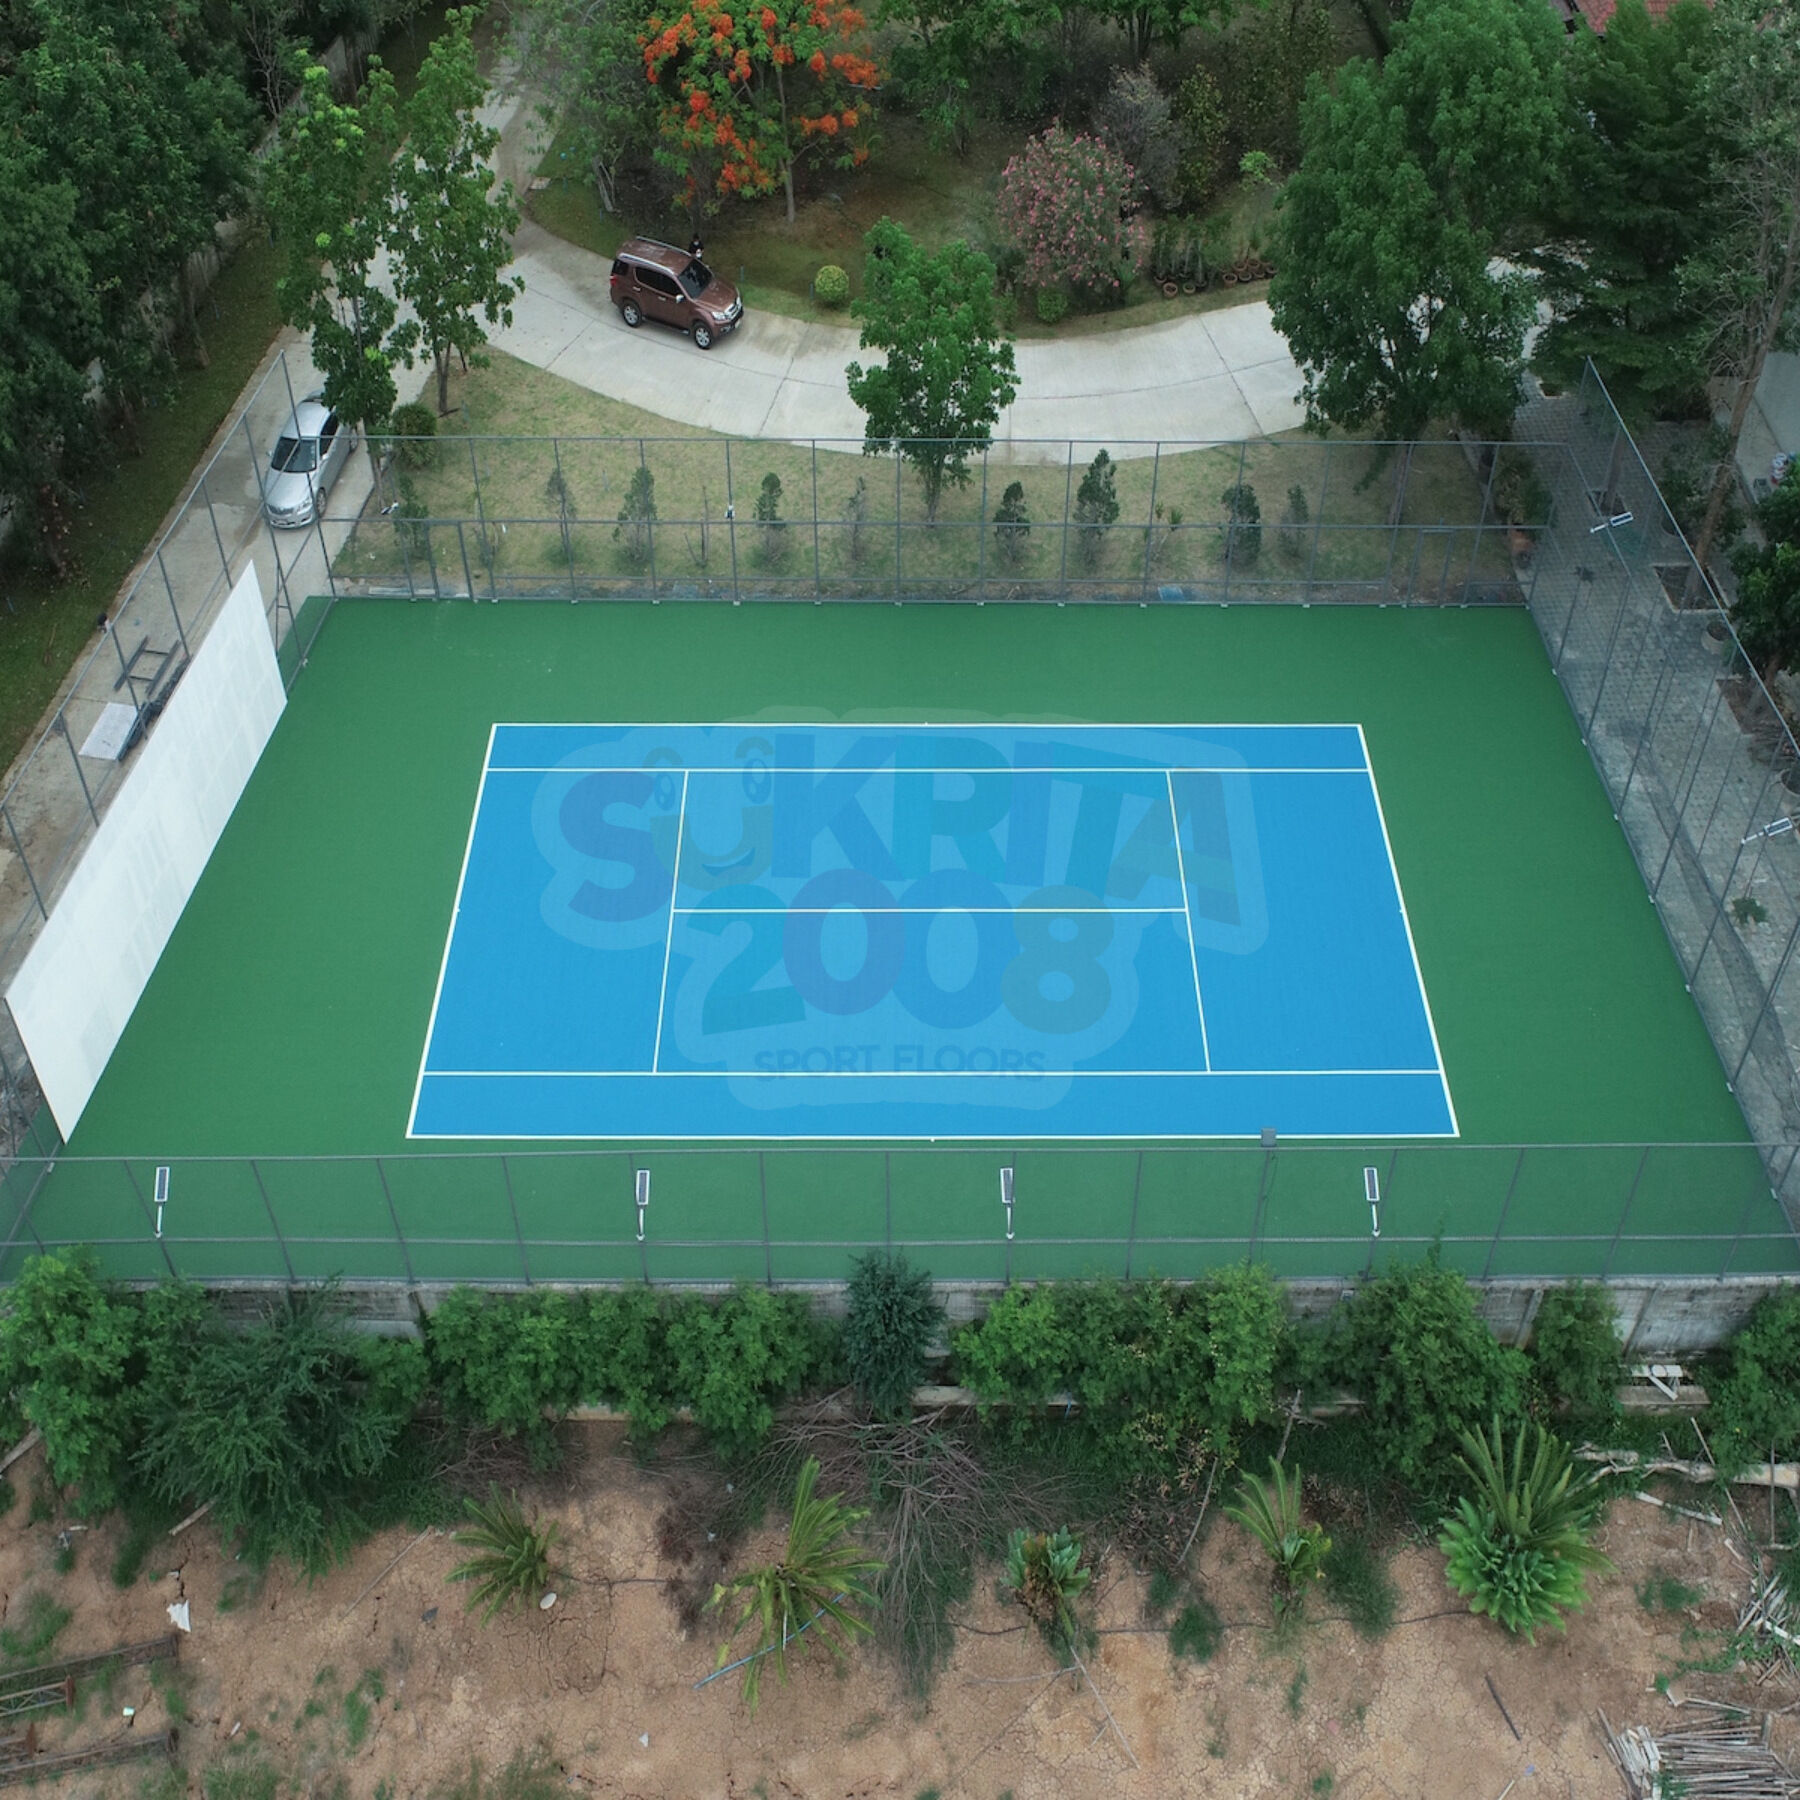 พื้นสนามเทนนิส ราคาพื้นสนามเทนนิส  ขนาดสนามเทนนิส